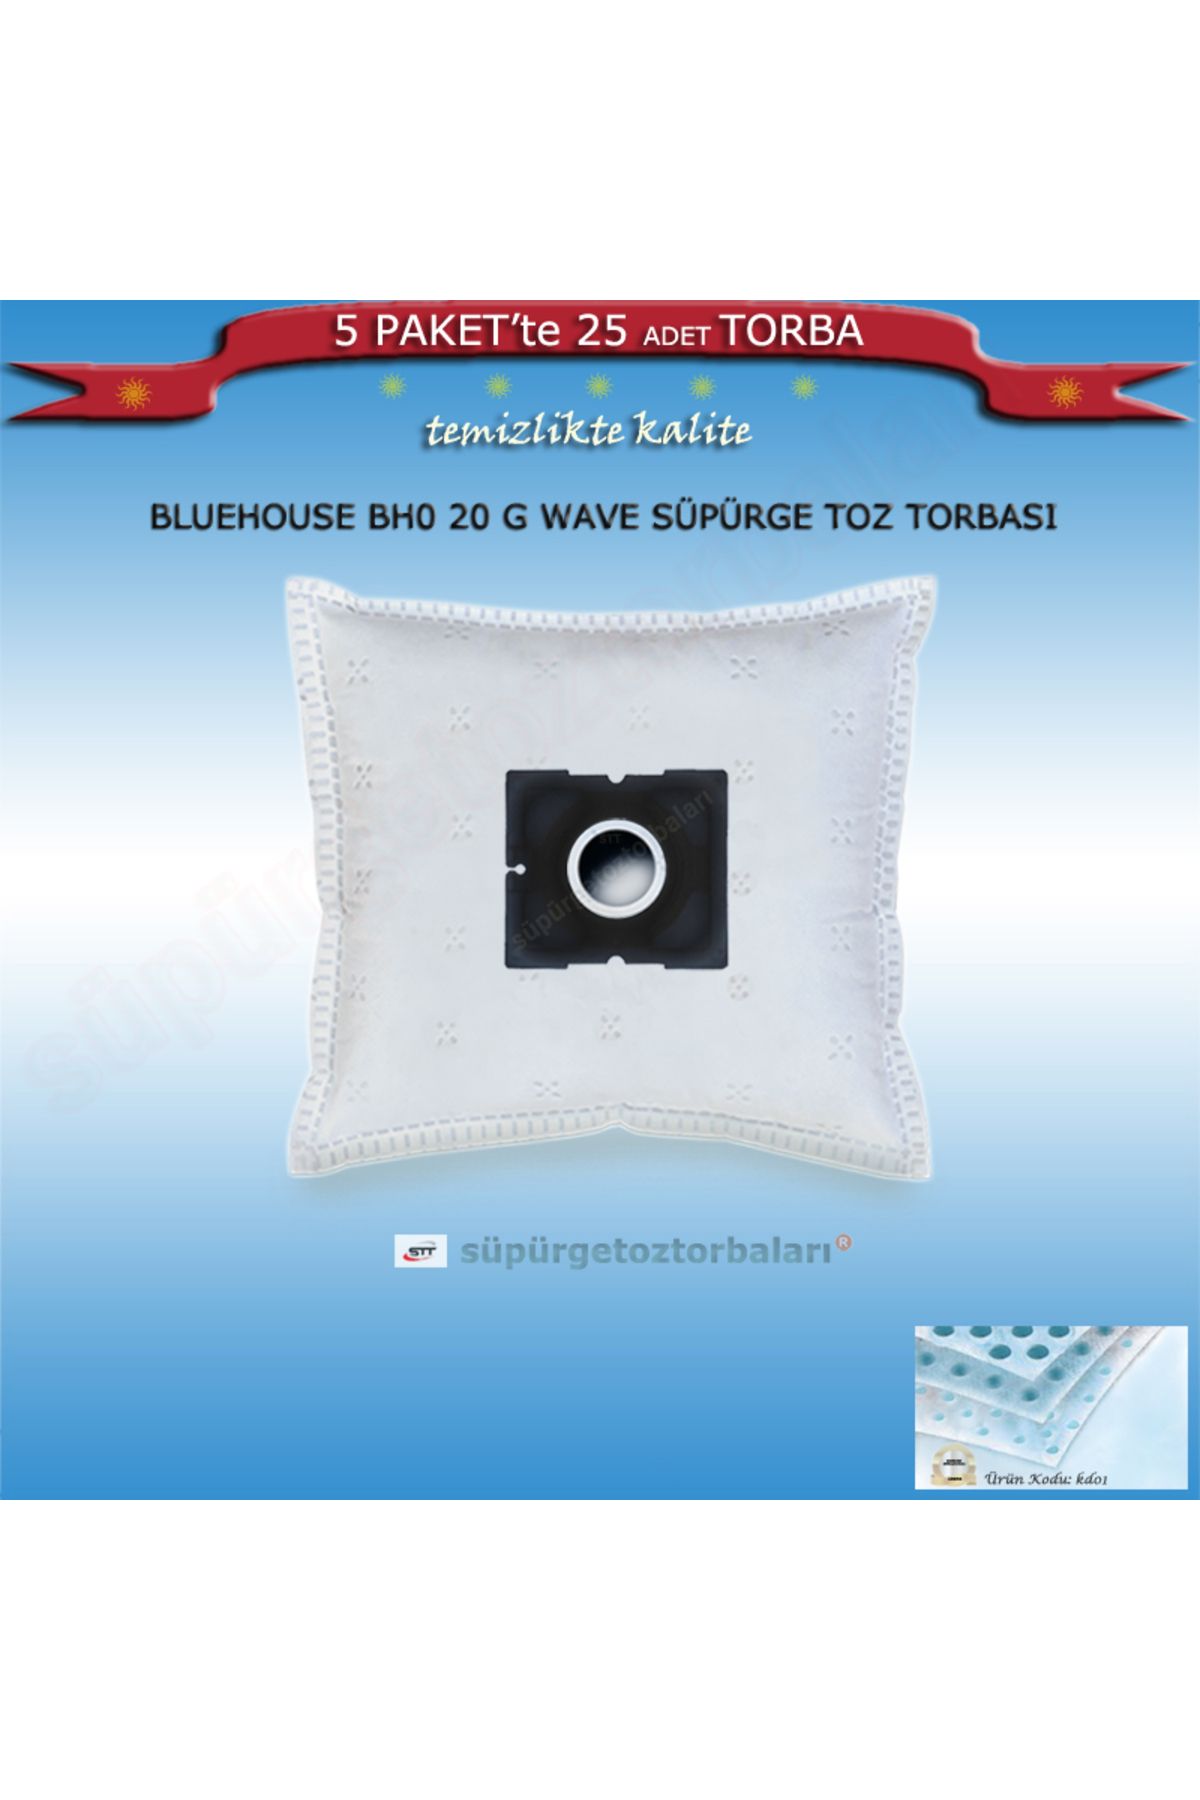 BLUE HOUSE Bluehouse Bh0 20 G Wave Süpürge Toz Torbası 25 Adet Torba Kd01